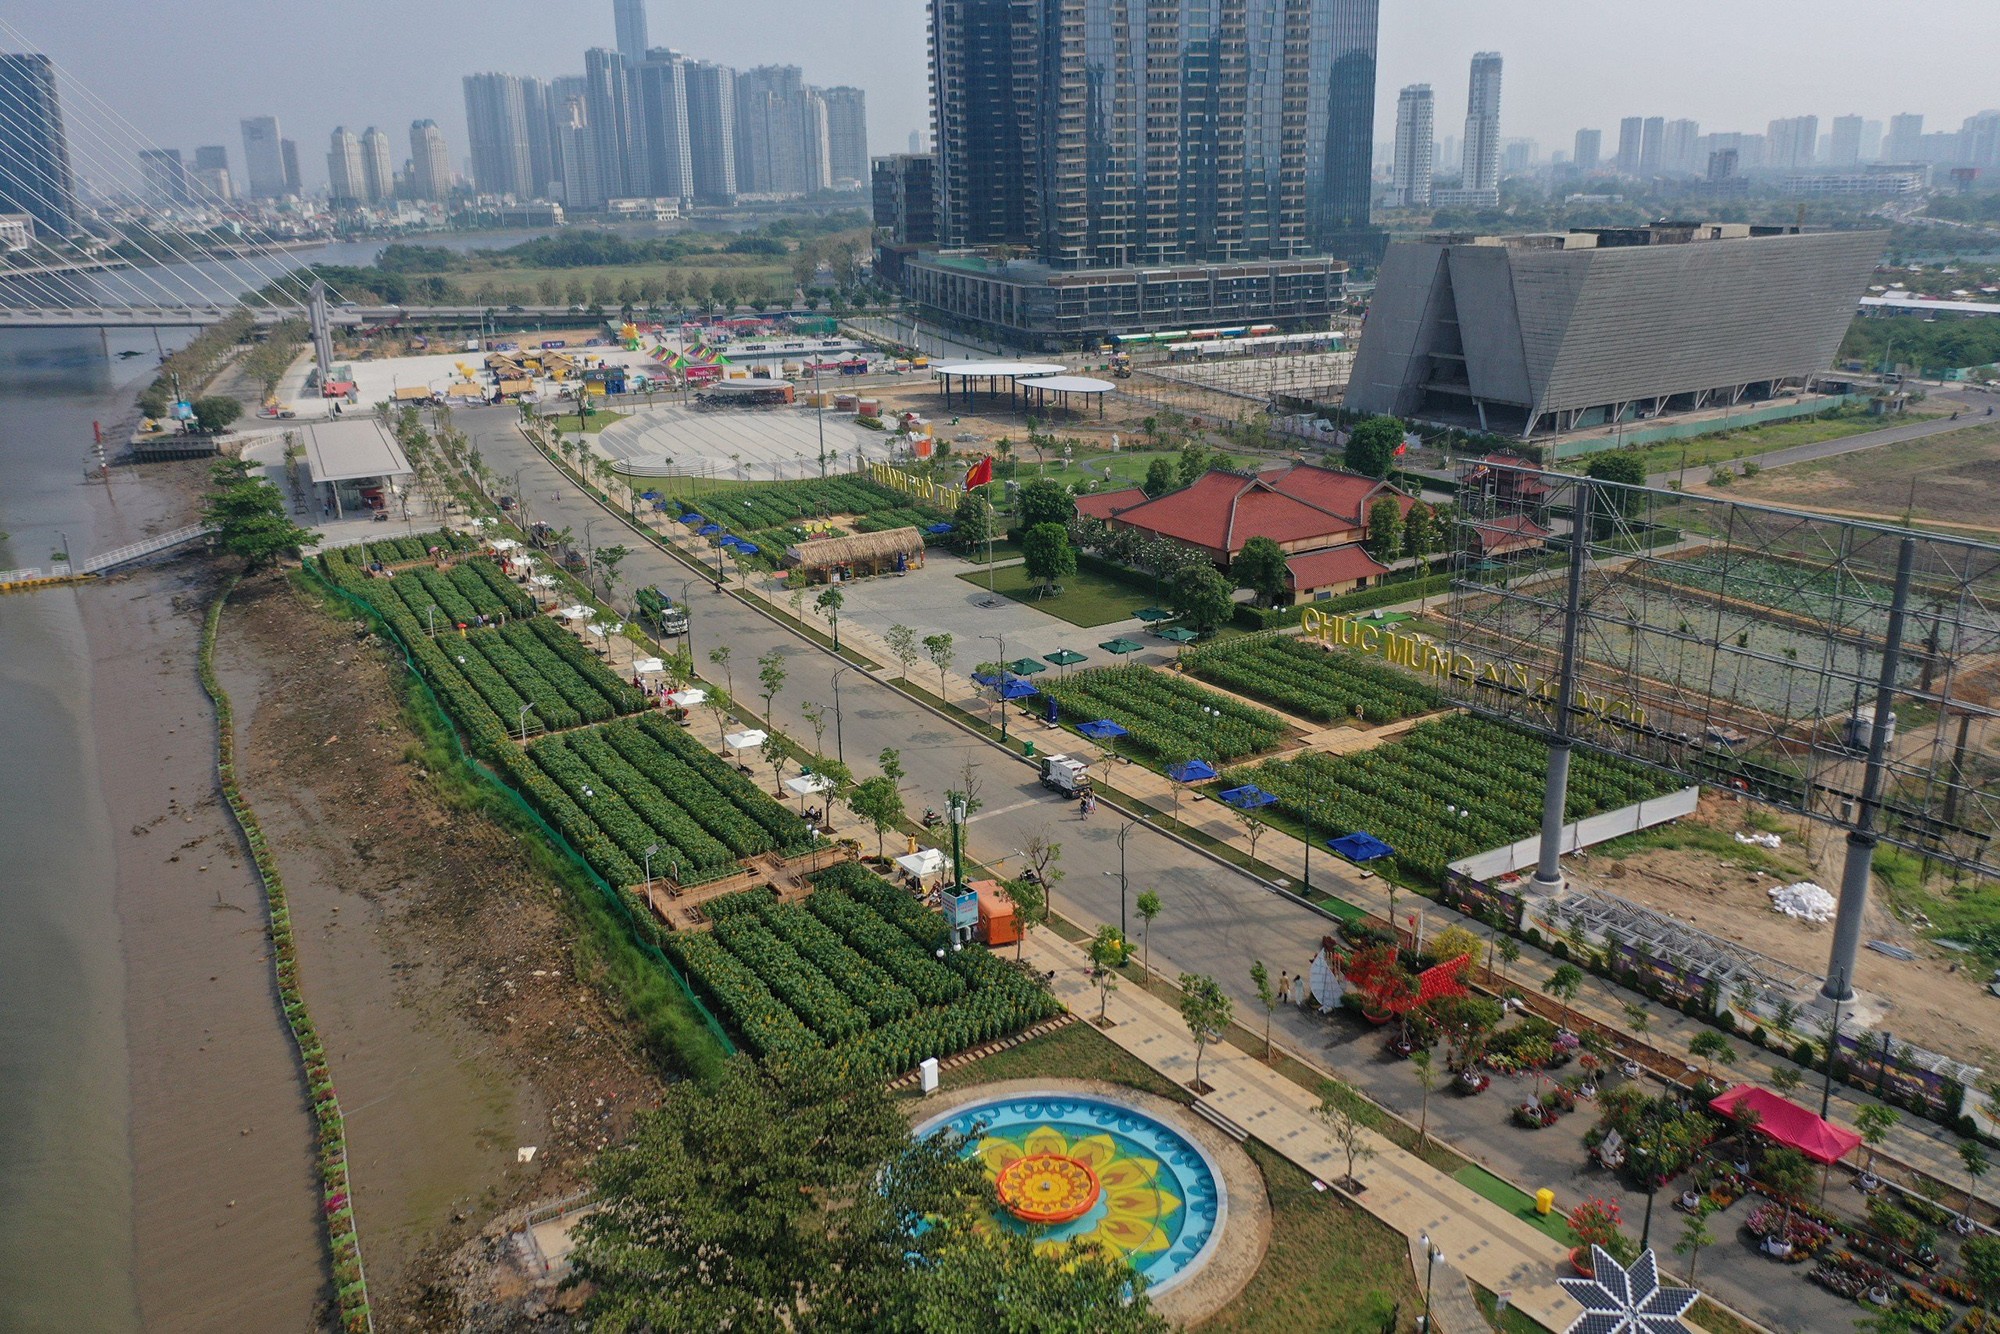 Sau hơn một tháng hoạt đông, công viên bờ sông Sài Gòn tại khu đô thị Thủ Thiêm (TP Thủ Đức) xuất hiện nhiều hạng mục mới như cầu Tình Yêu, đài phun nước, khu cầu tàu, cây hoa hướng dương năng lượng mặt trời,… làm thay đổi diện mạo khu vực này.